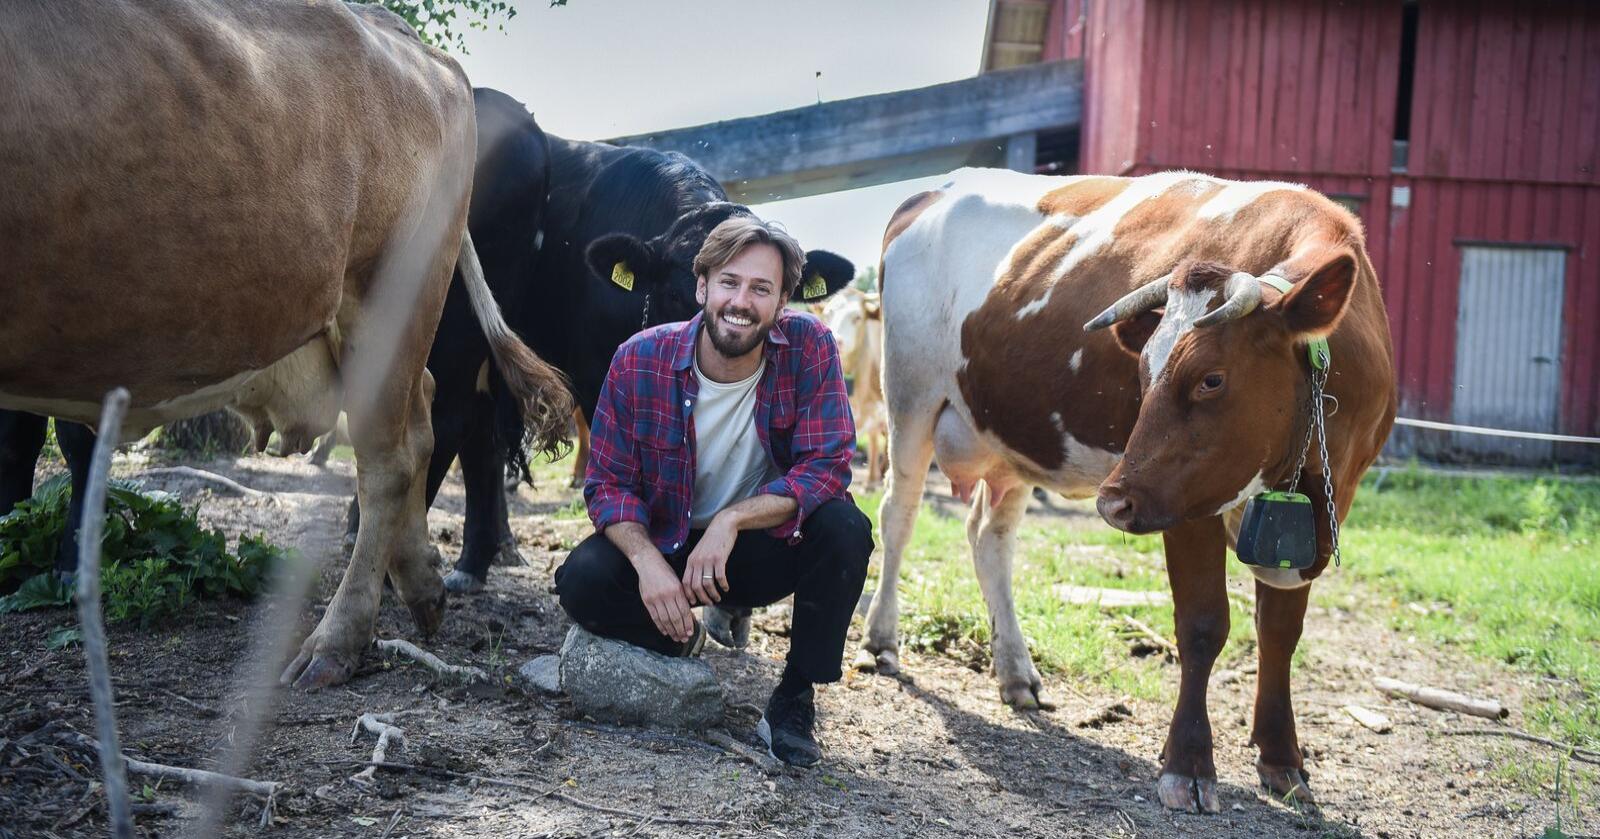 Markus Hustad, daglig leder i Økologisk Norge, ønsker at staten skal gi pristilskudd til økologisk melk, slik at øko-melka blir billigere å bruke for Rørosmeieriet og andre kommersielle aktører. Foto: Marit Lundby